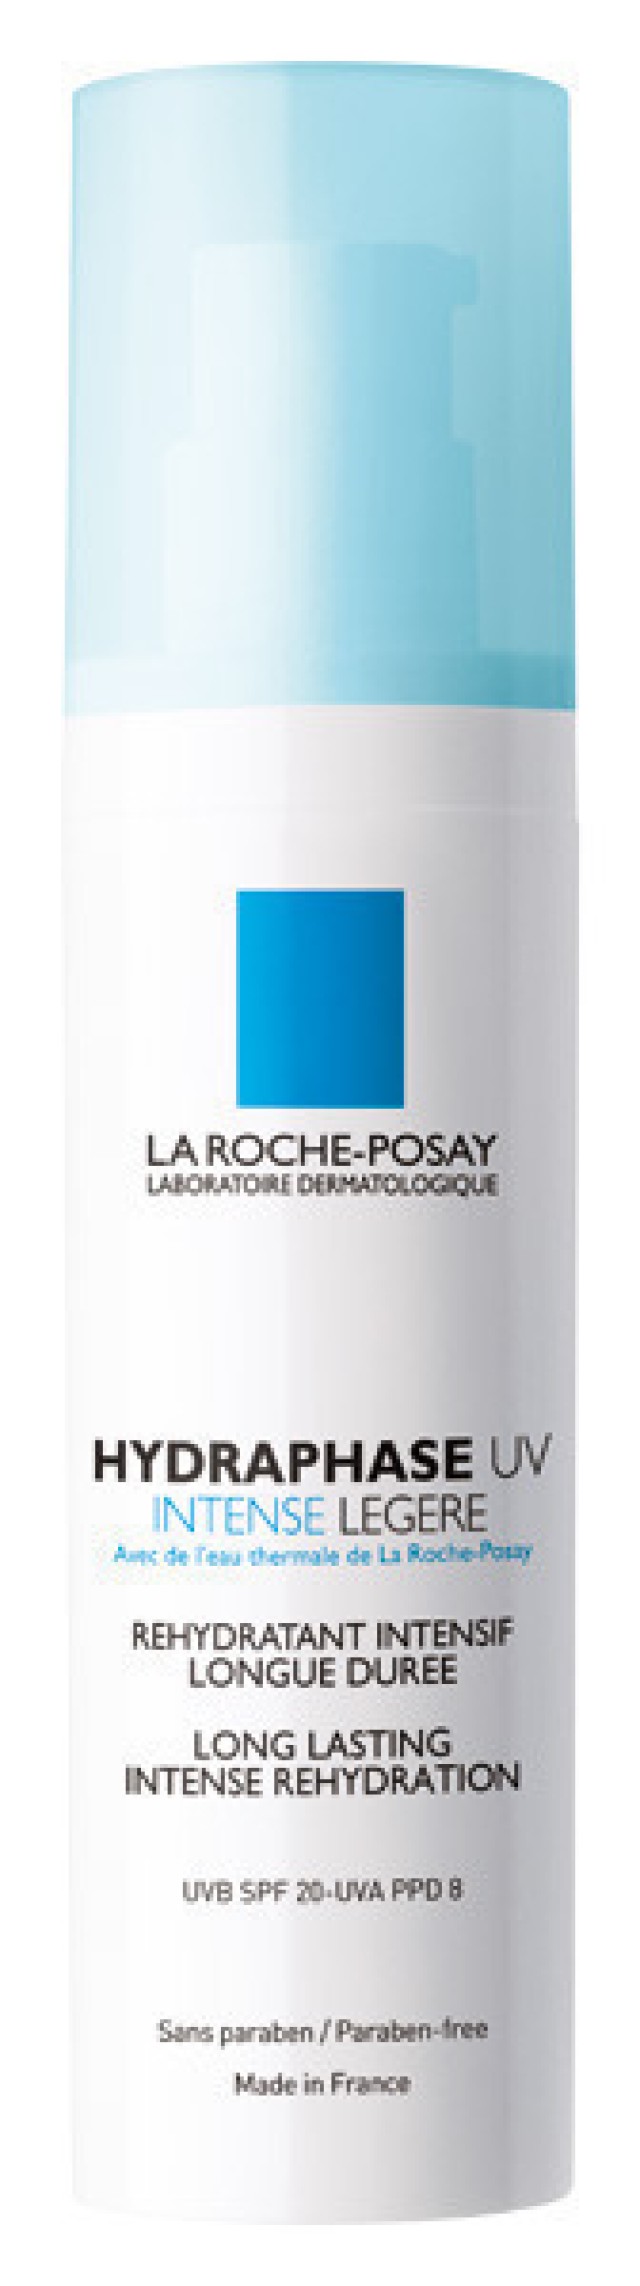 La Roche Posay Hydraphase Intense Uv Legere 50ml